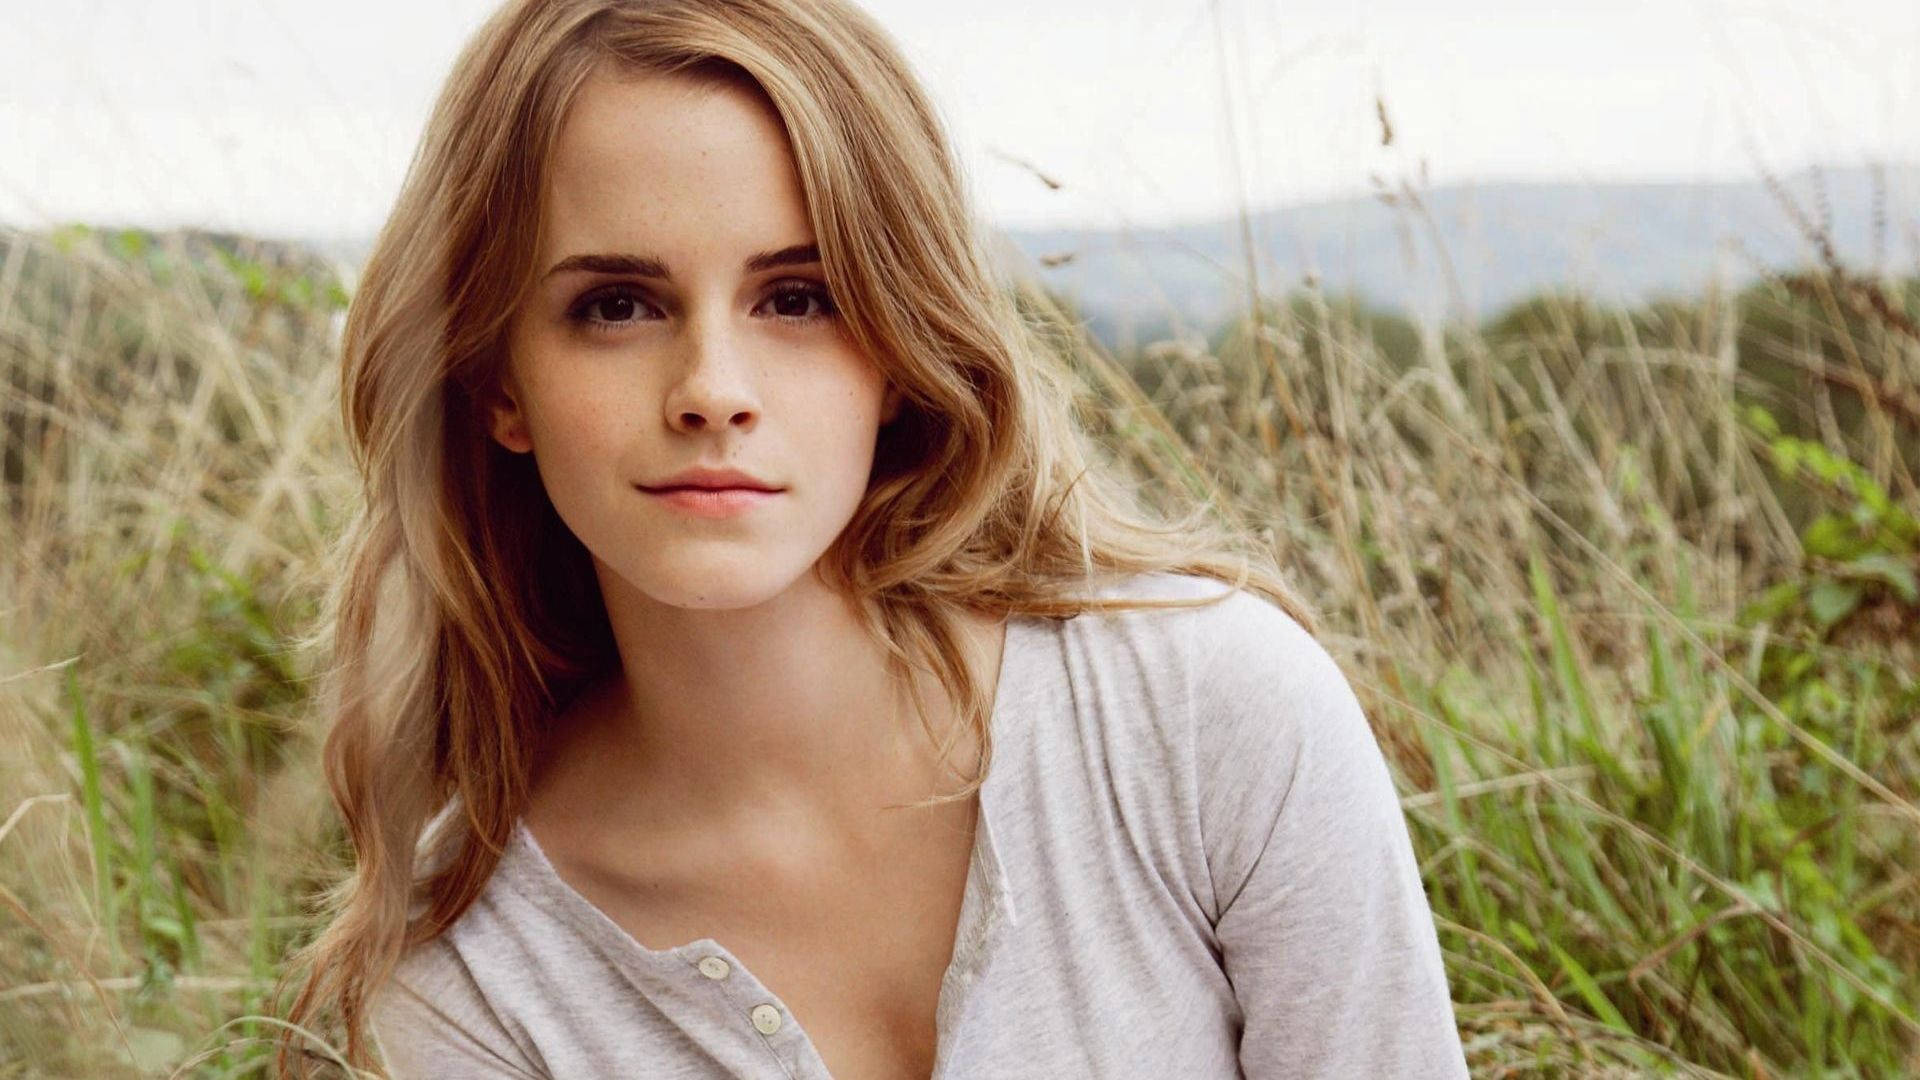 Emma Watson In A Grass Field Background